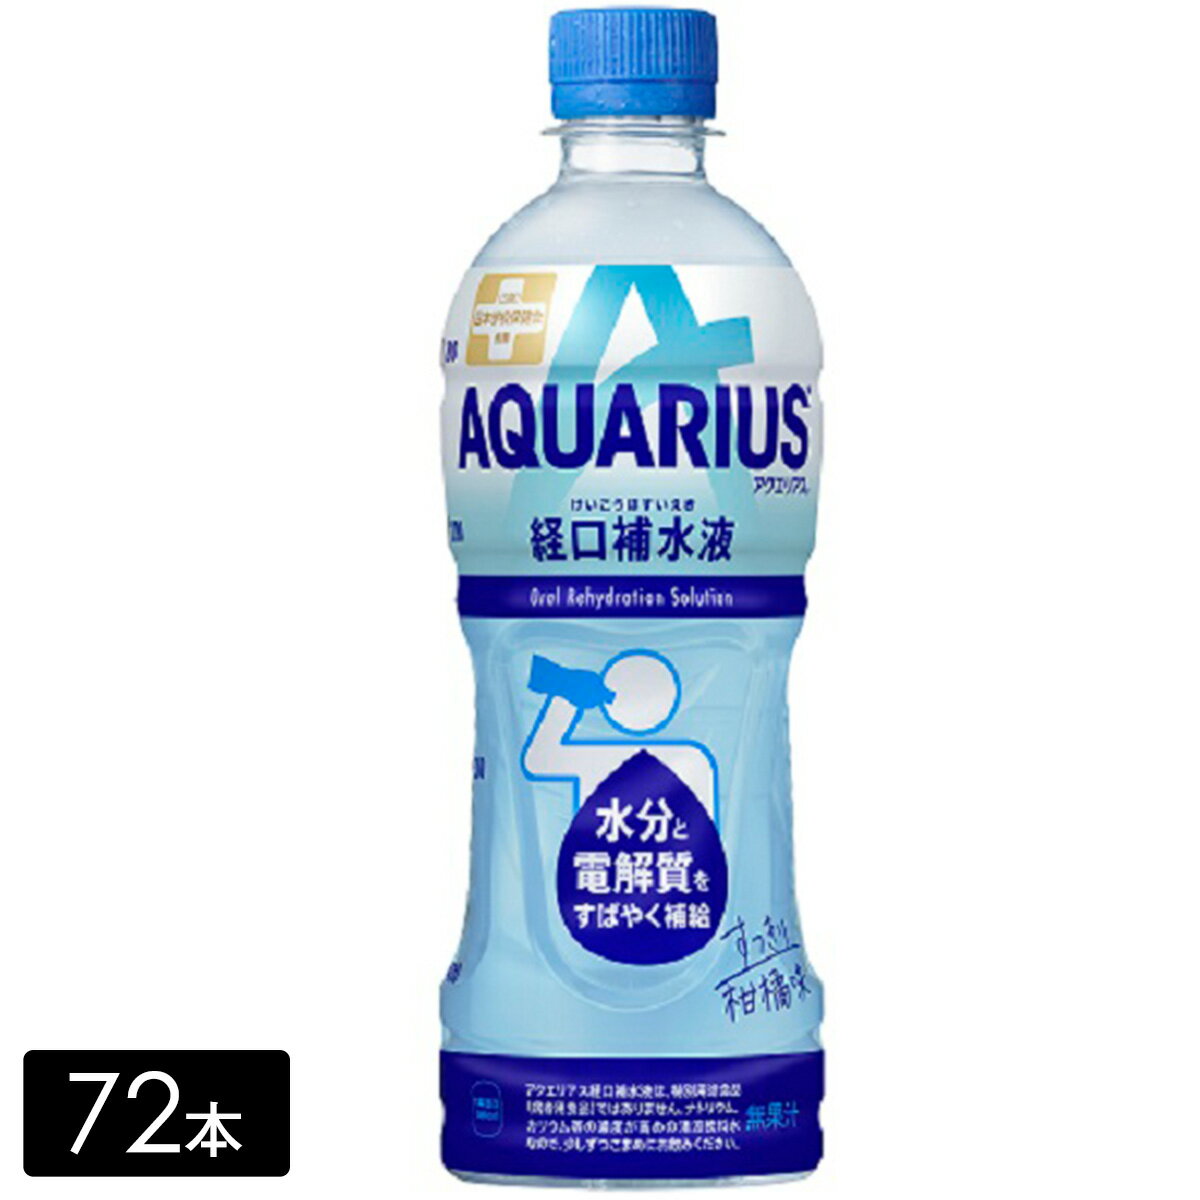 アクエリアス経口補水液 500mL×72本(24本×3箱) 水分補給 カロリーひかえめ AQUARIUS ペットボトル ケース売り まとめ買い